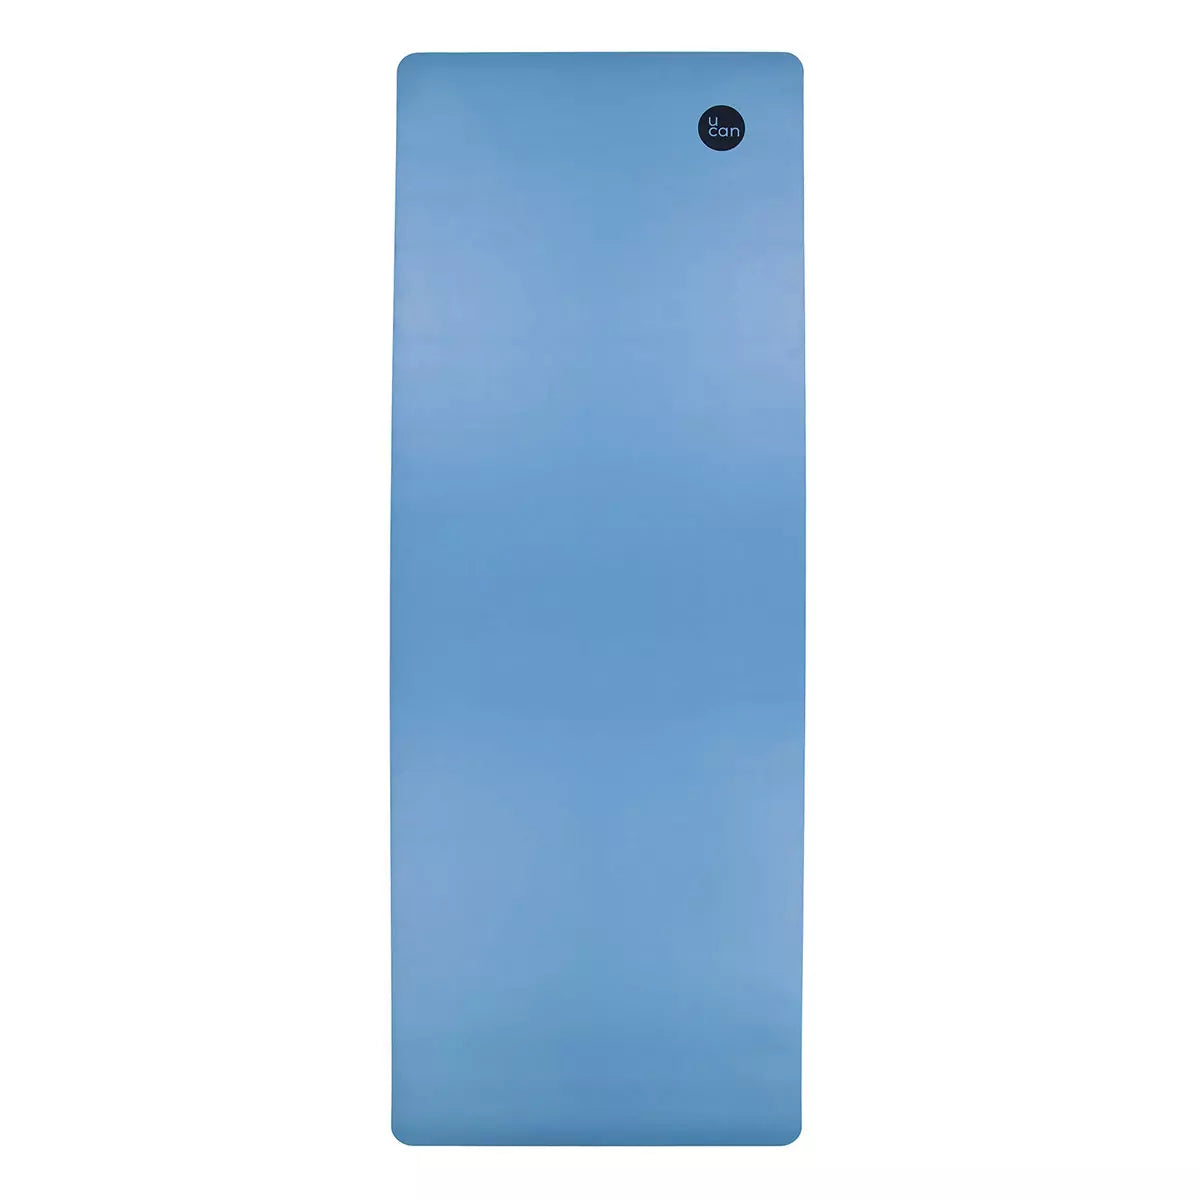 Yoga Mat Liso Azul